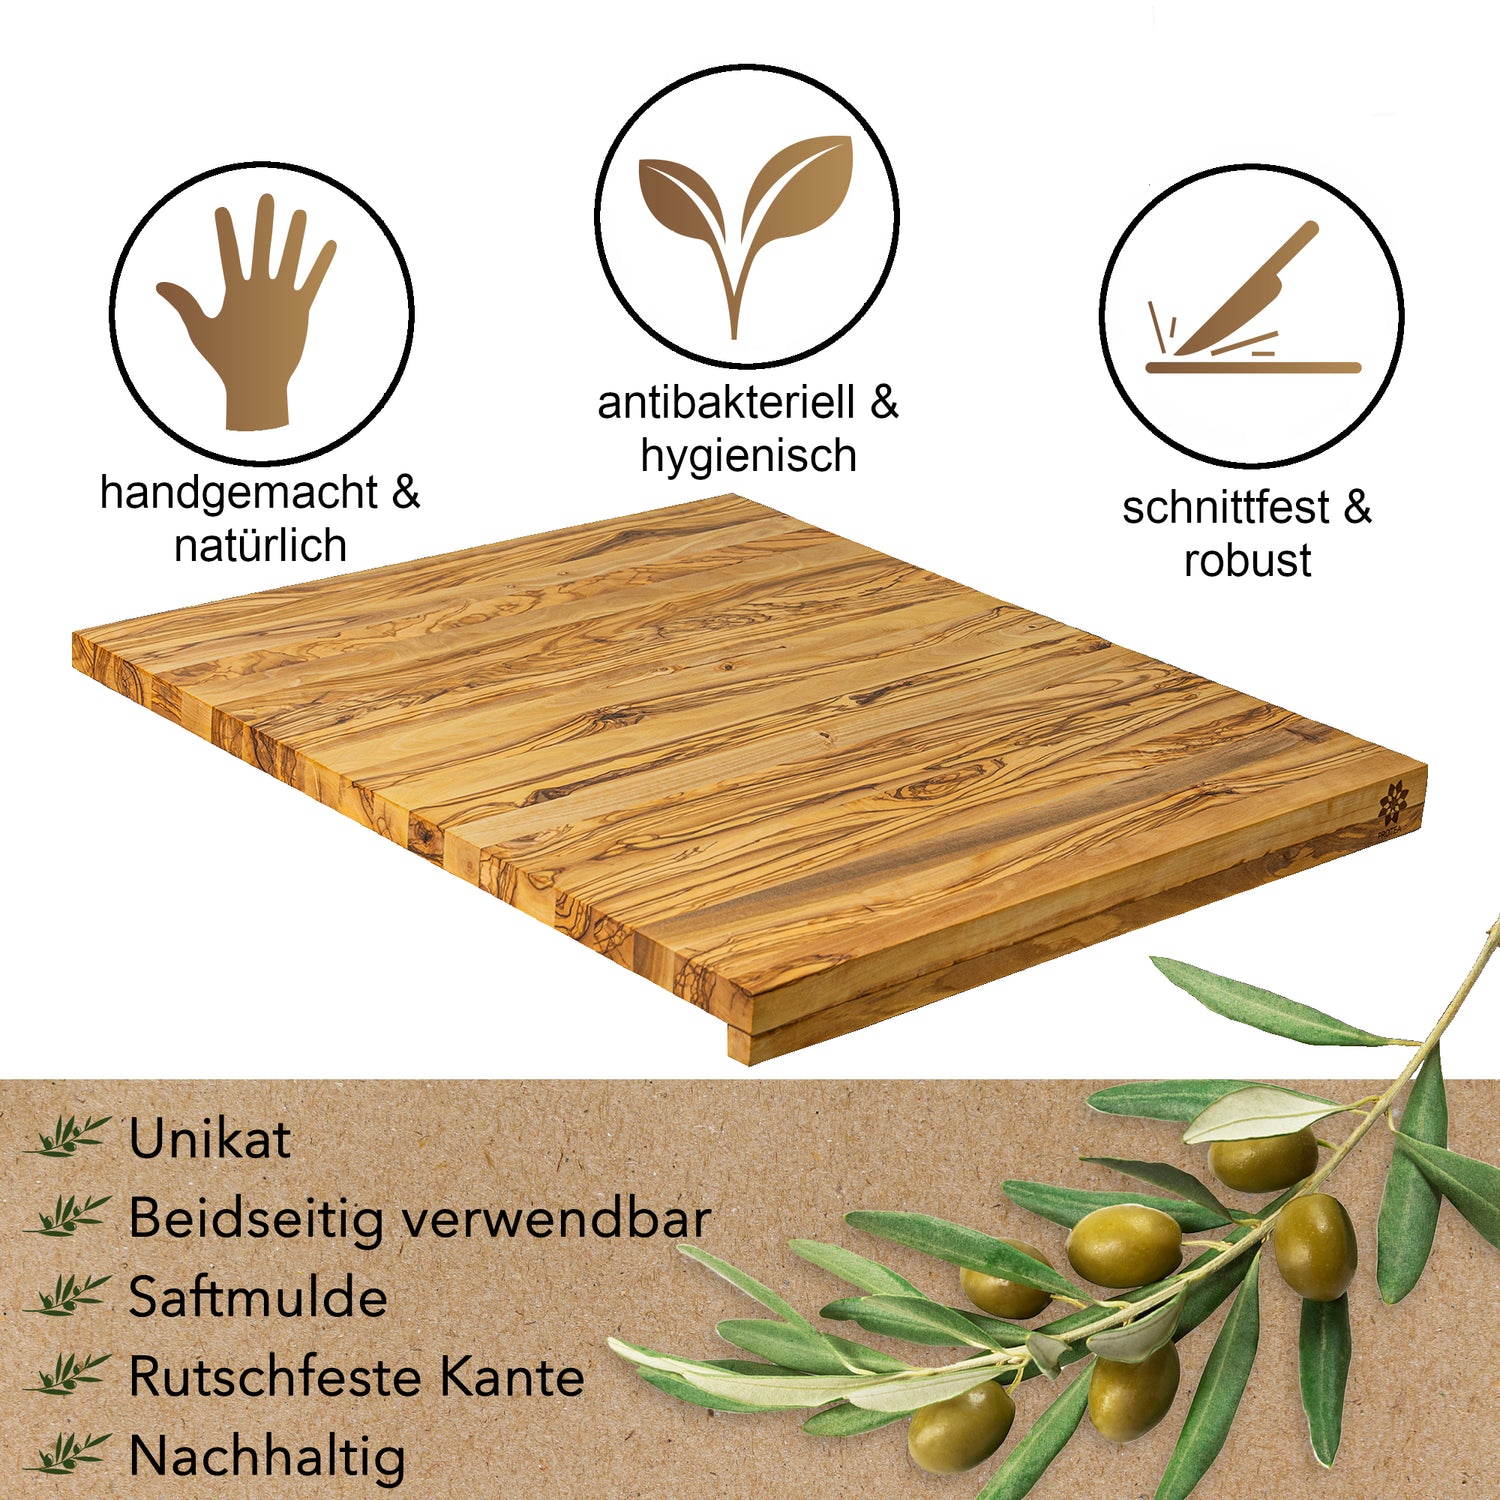 Unser Brett besitzt eine Naturkante und ist damit unser den Holzbrettern aus Olivenholz einzigartig. Durch die Anlegekante ist die massive Olivenholzplatte fest und erlaubt rutschfestes Arbeiten. 